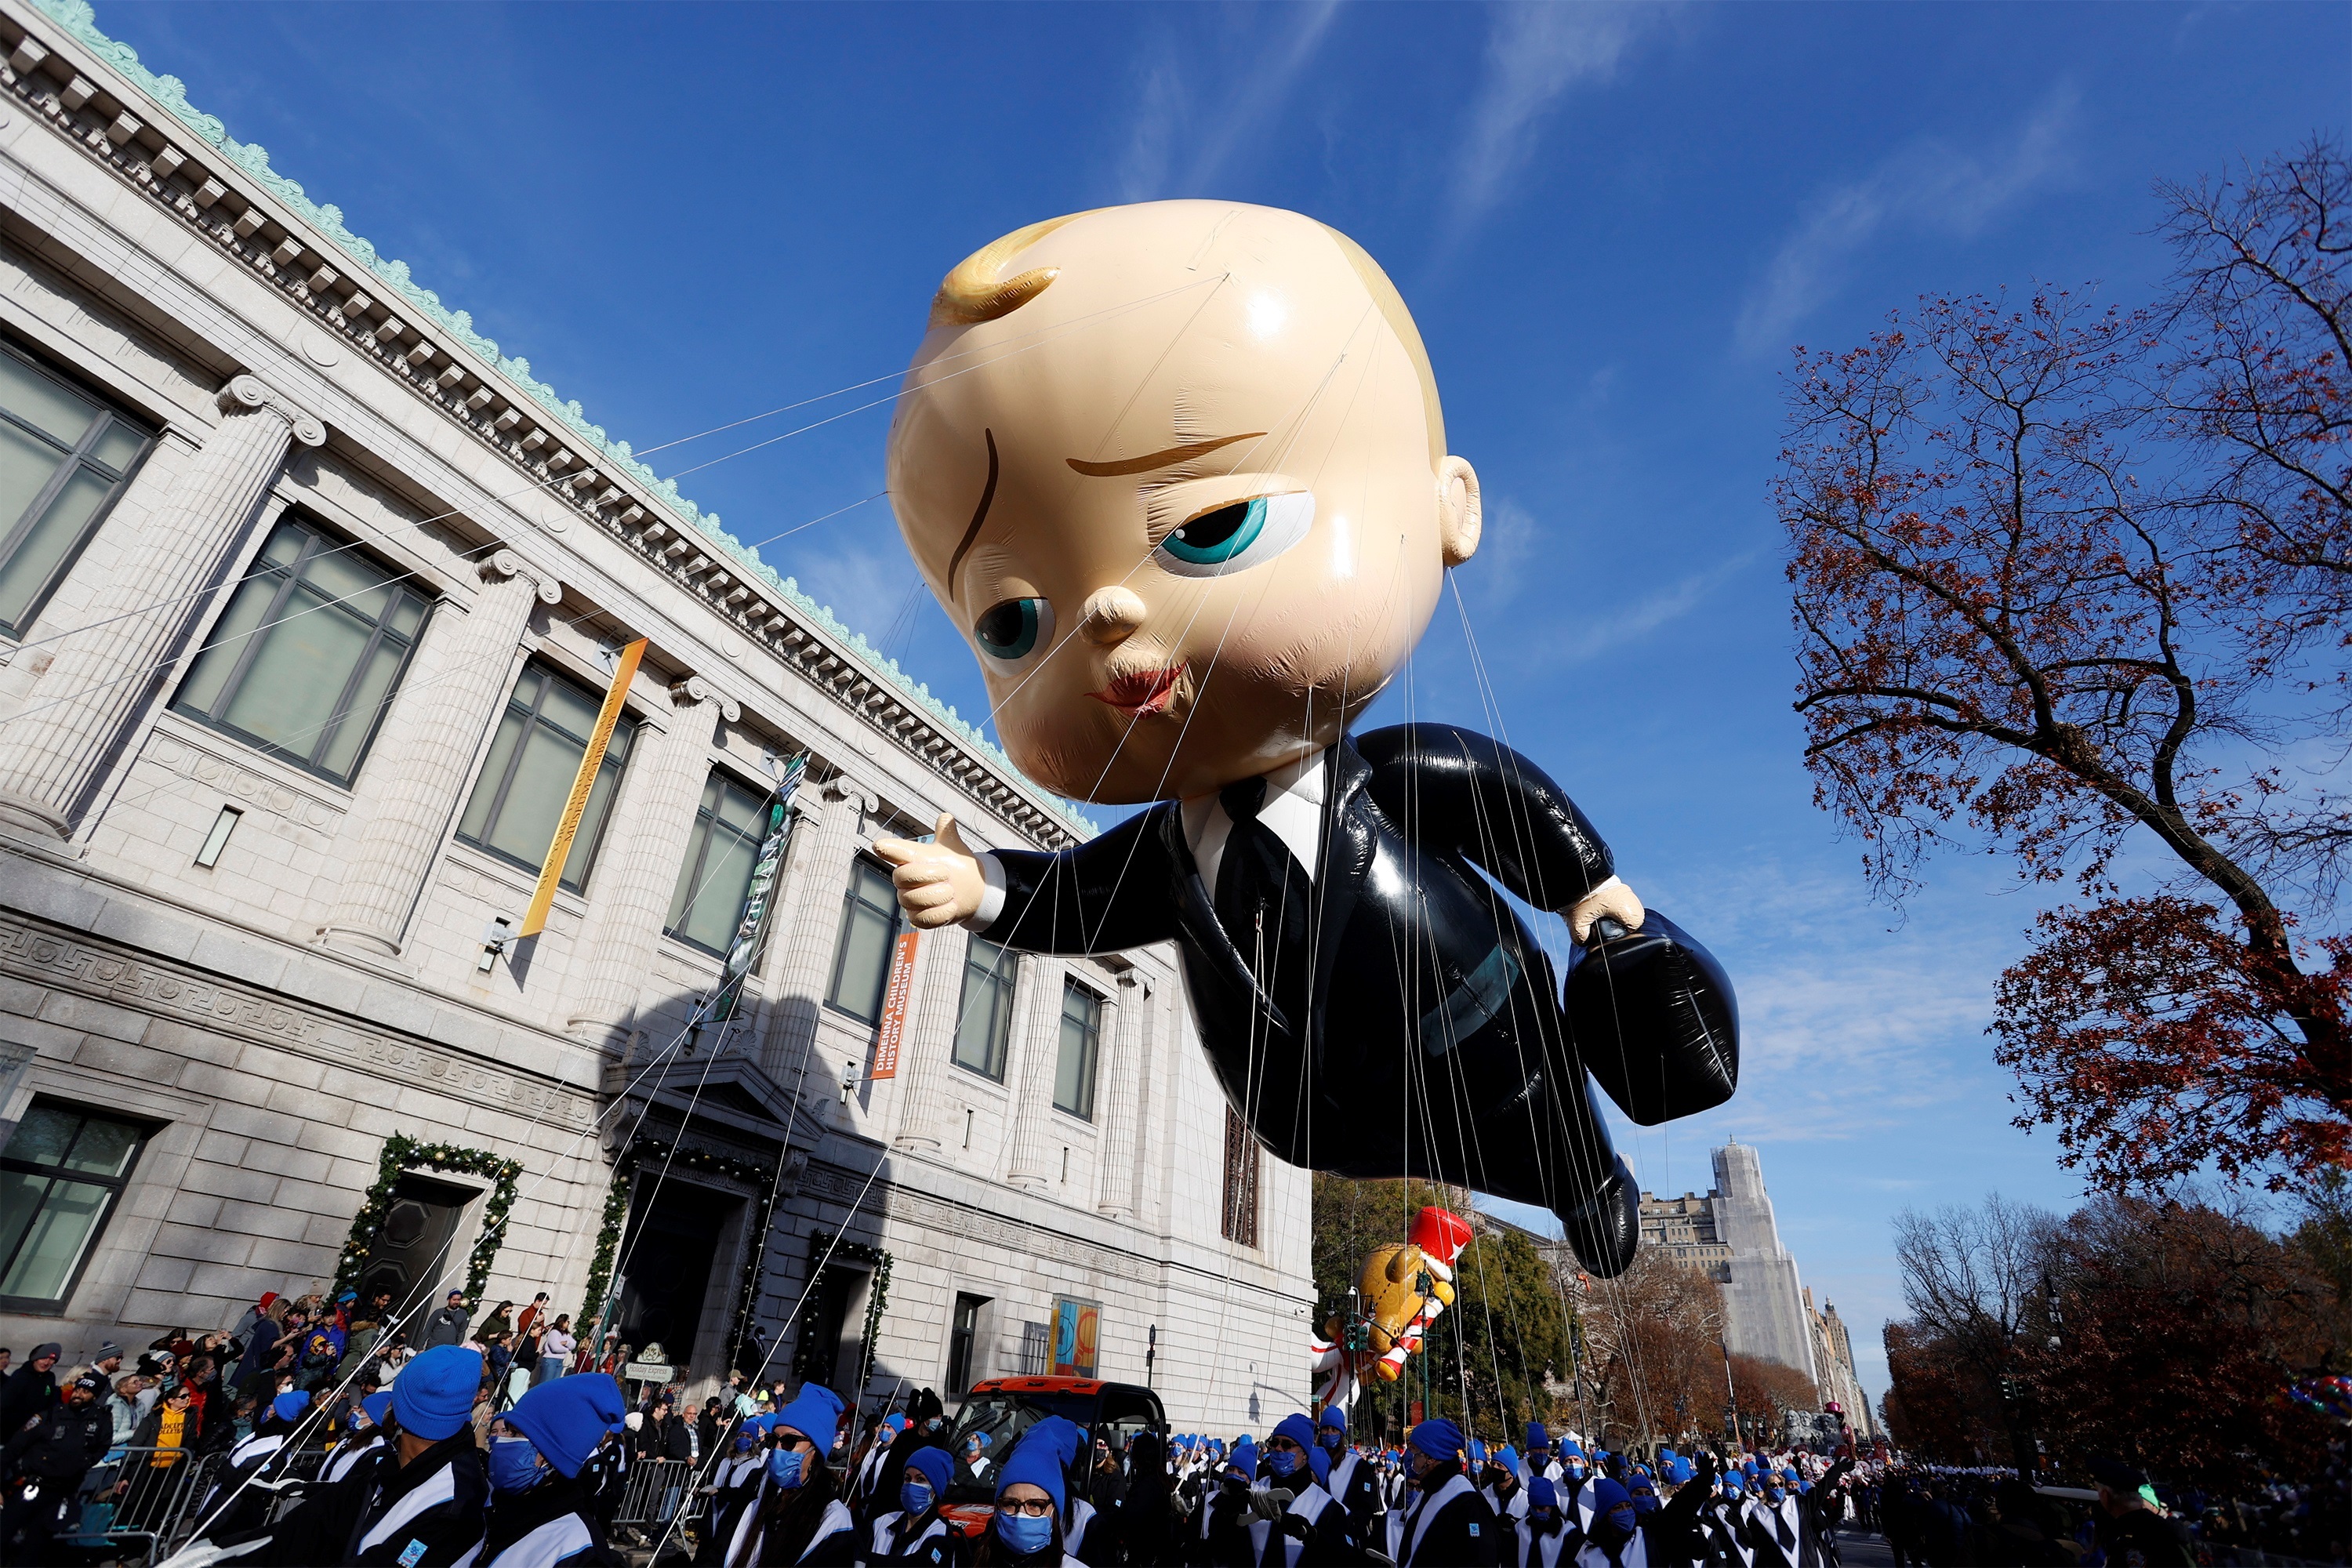 Miles disfrutan del desfile de globos gigantes en NY - Los Angeles Times